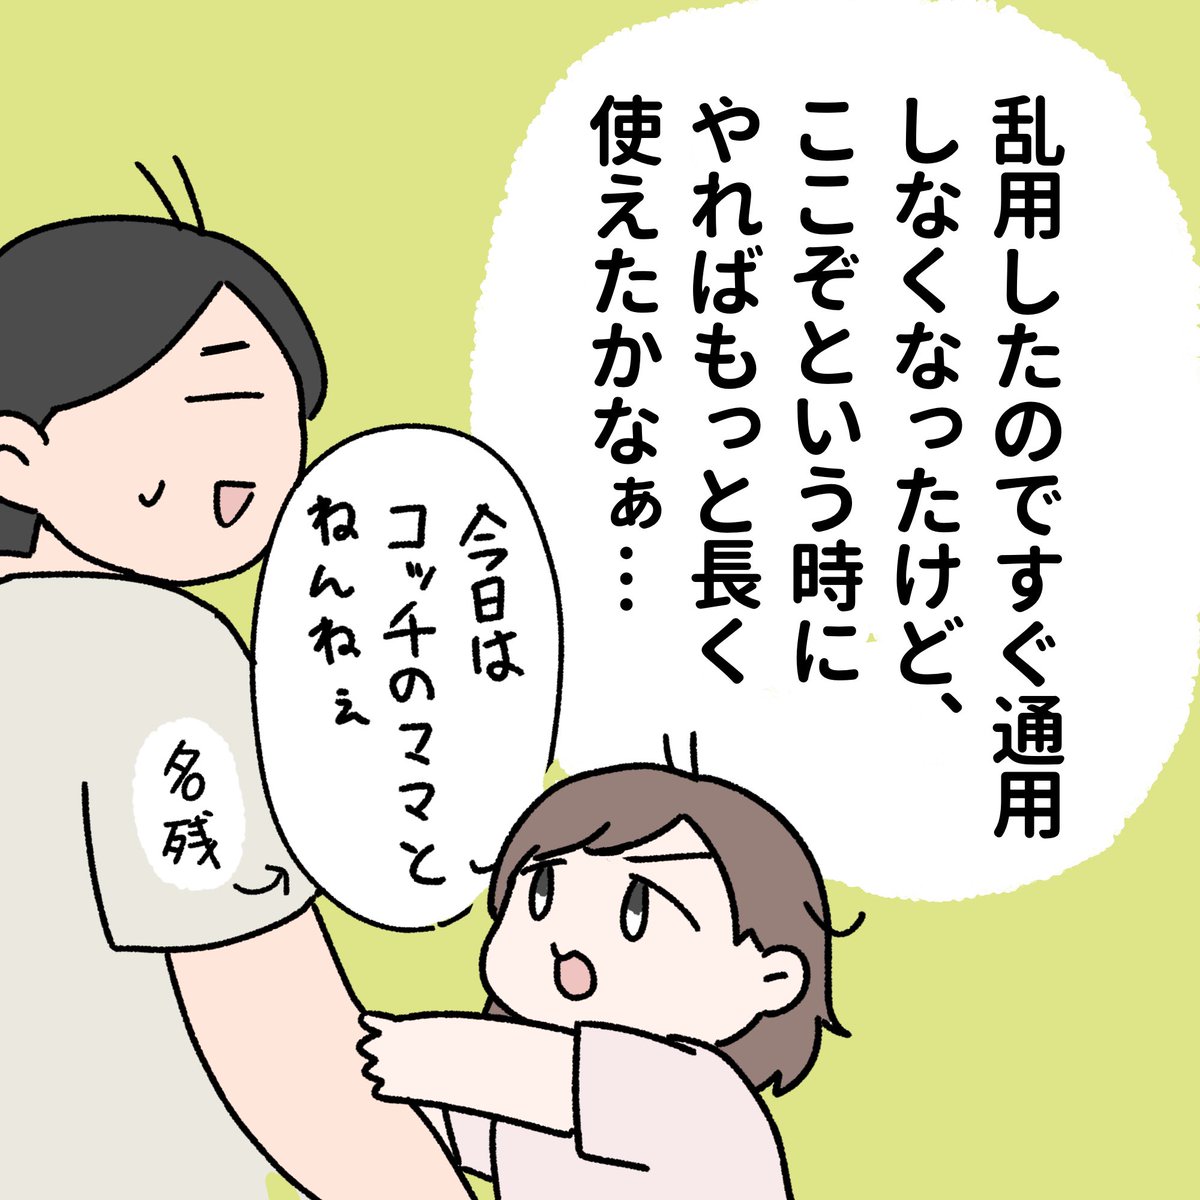 パパイヤ期のまさかの対策②
#育児漫画 